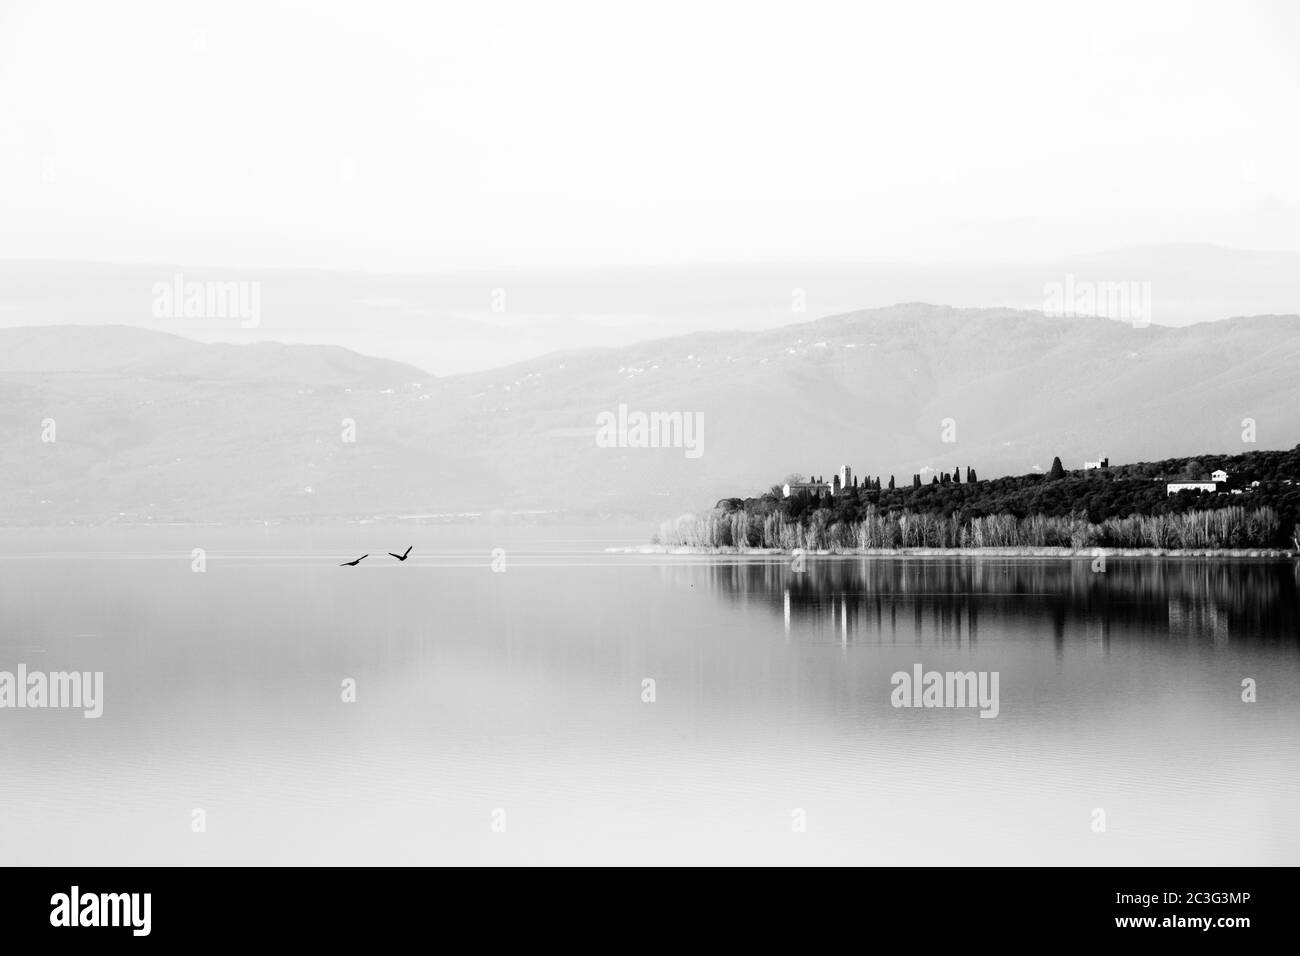 Une vue parfaitement symétrique d'un lac, avec des arbres réflexions sur l'eau Banque D'Images